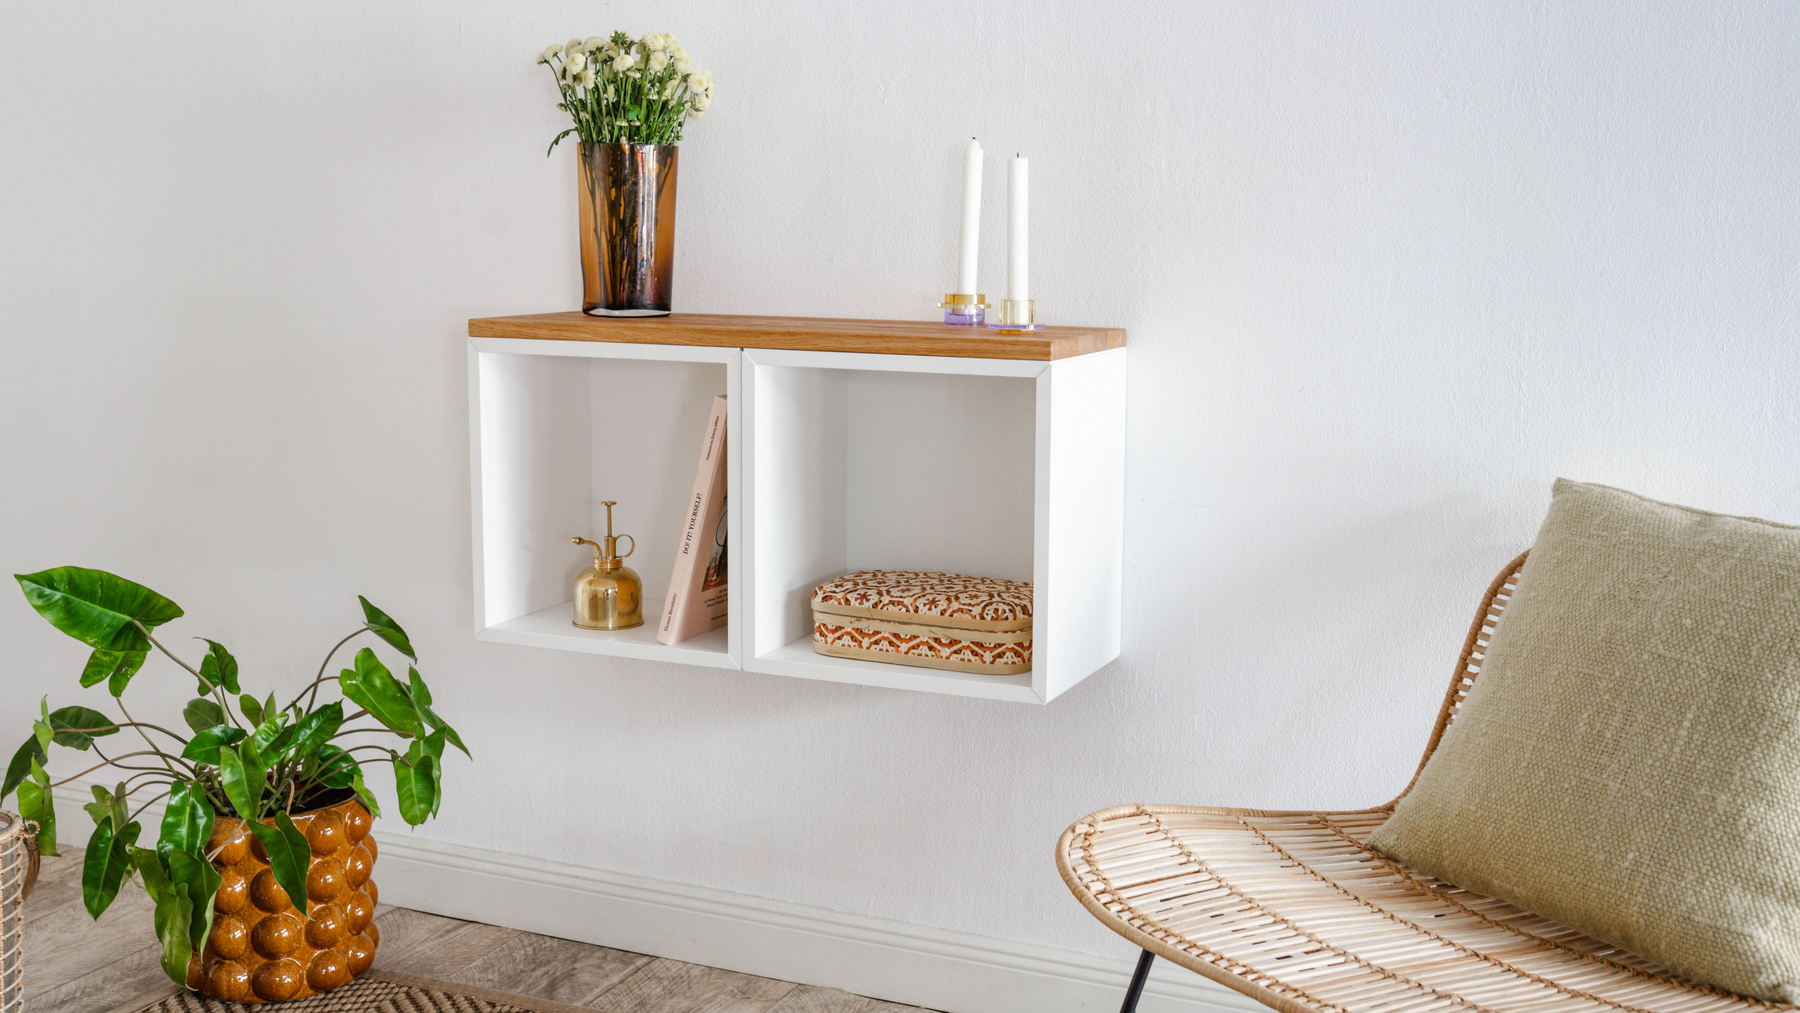 HORST Holz Deckplatte für IKEA Wandregal Eket Wohnzimmer